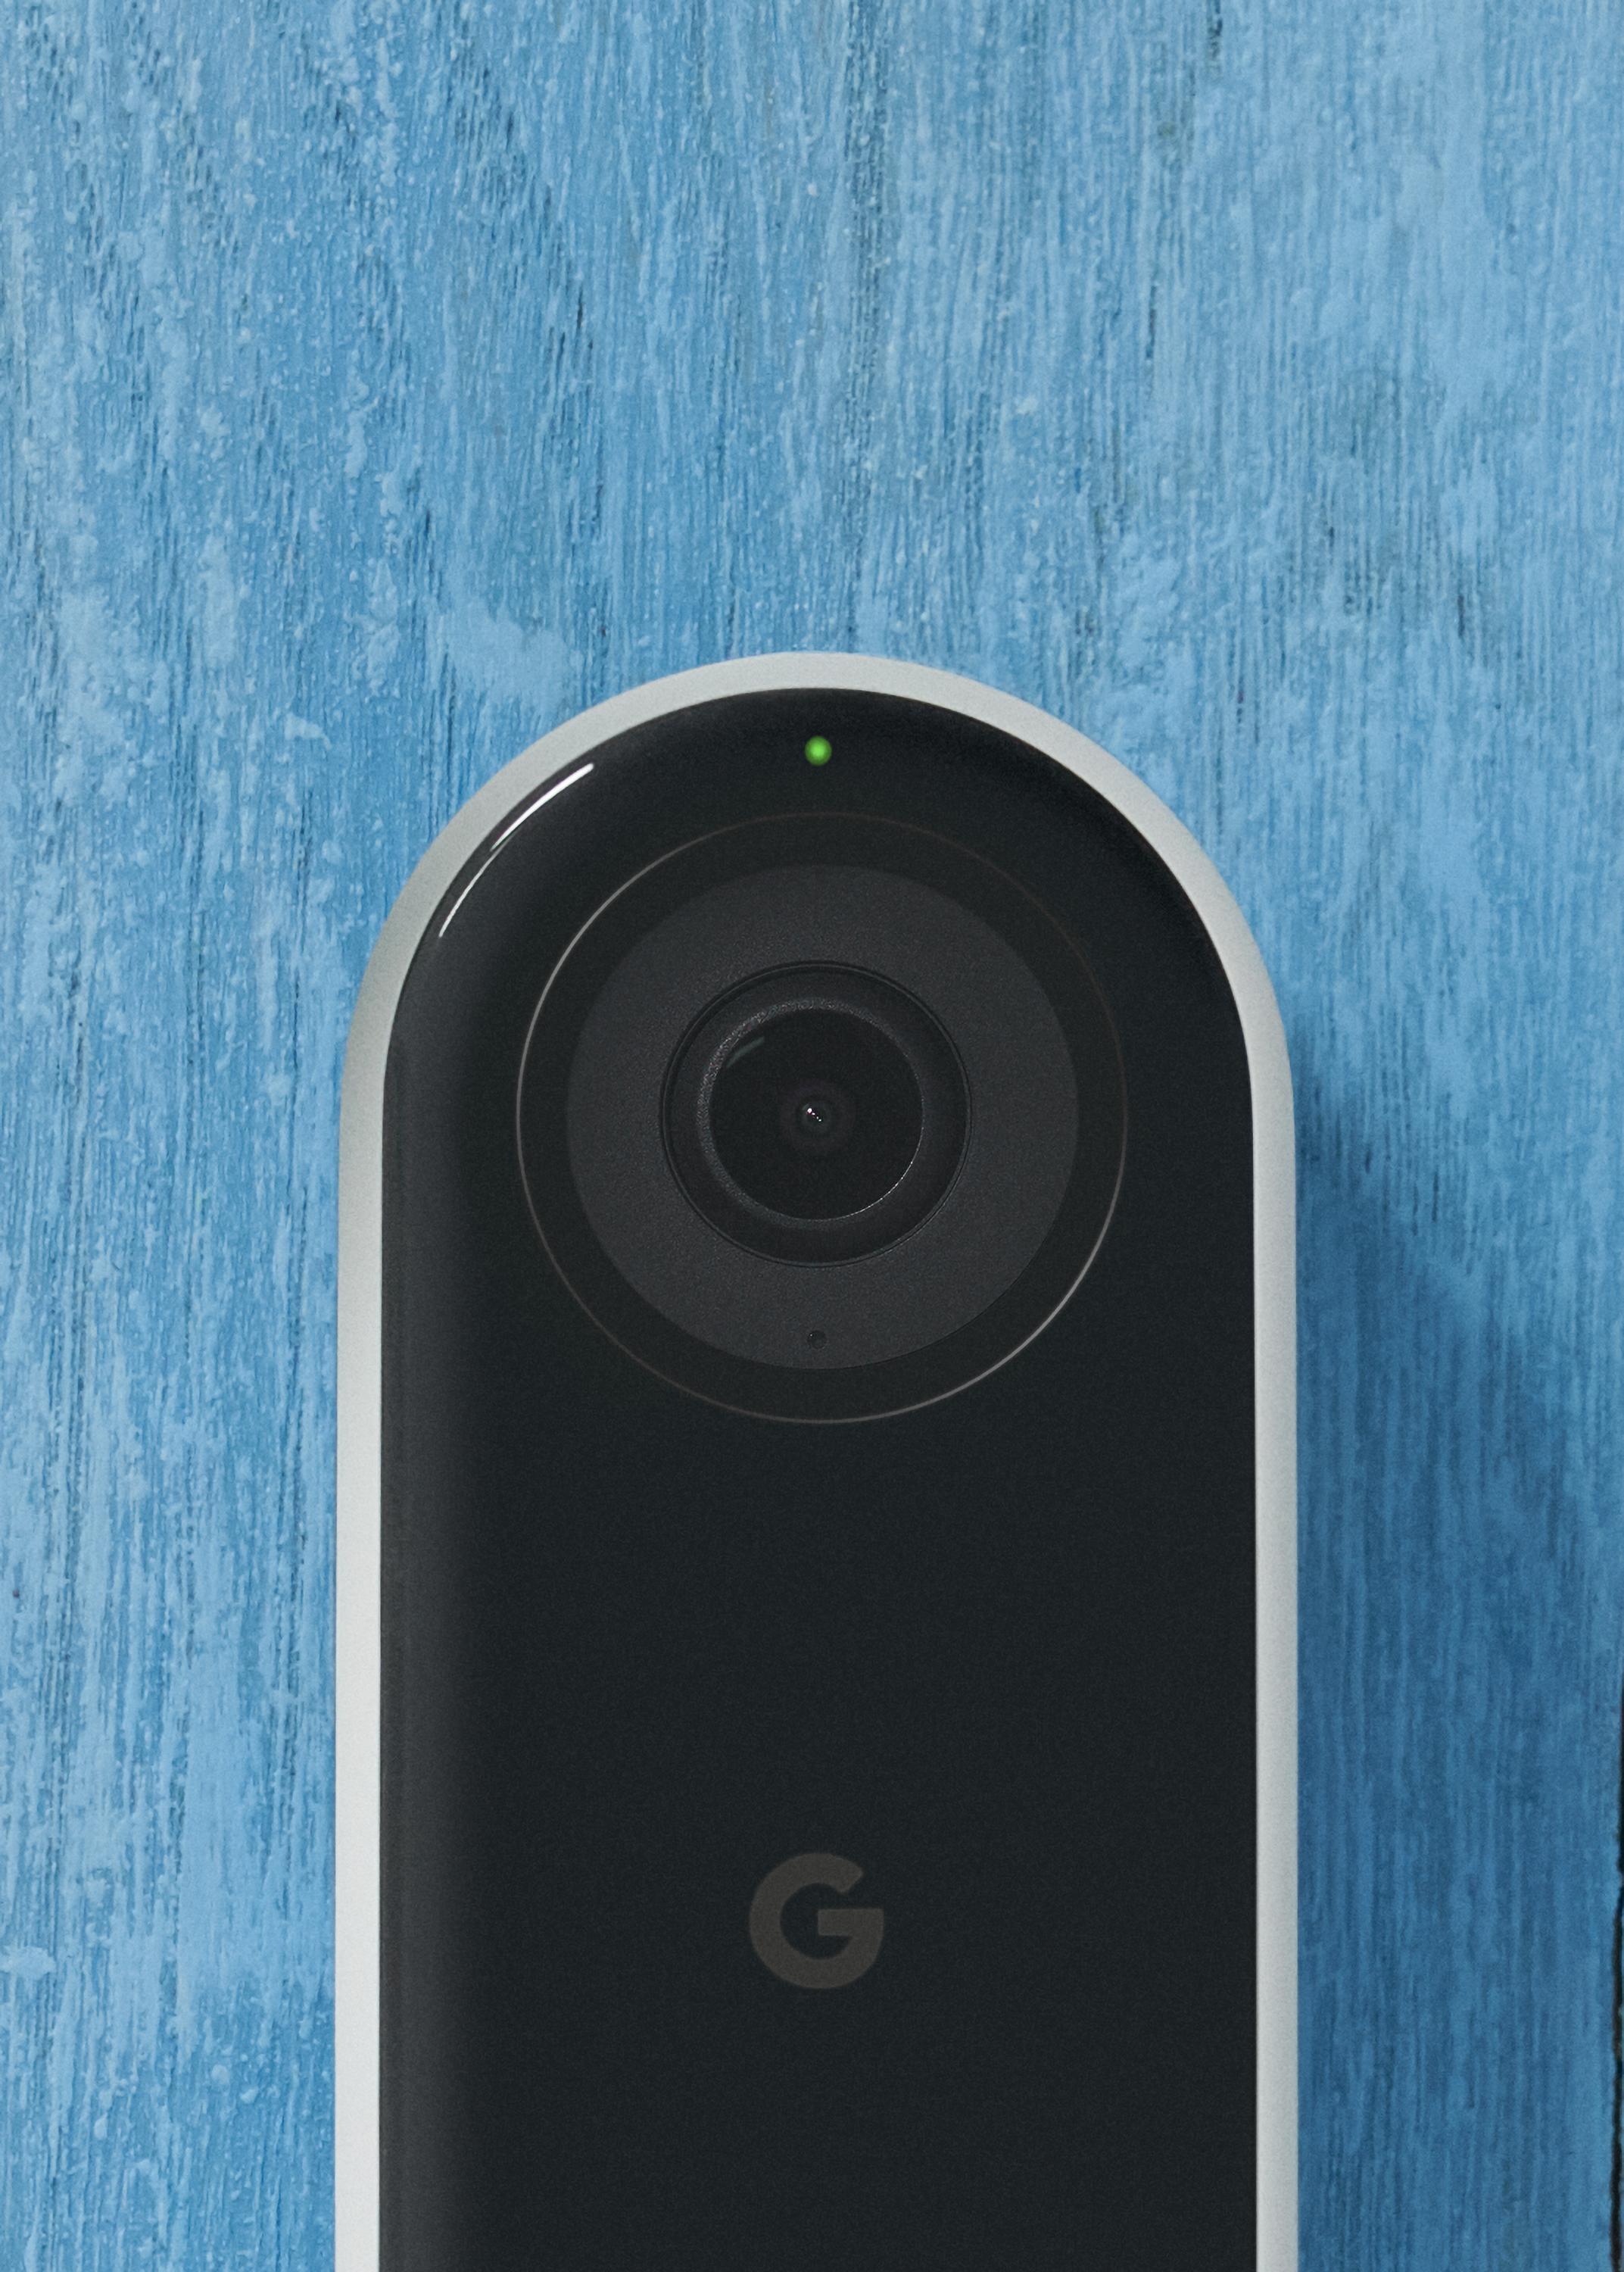 Google Video Doorbells #NC5100US - 12